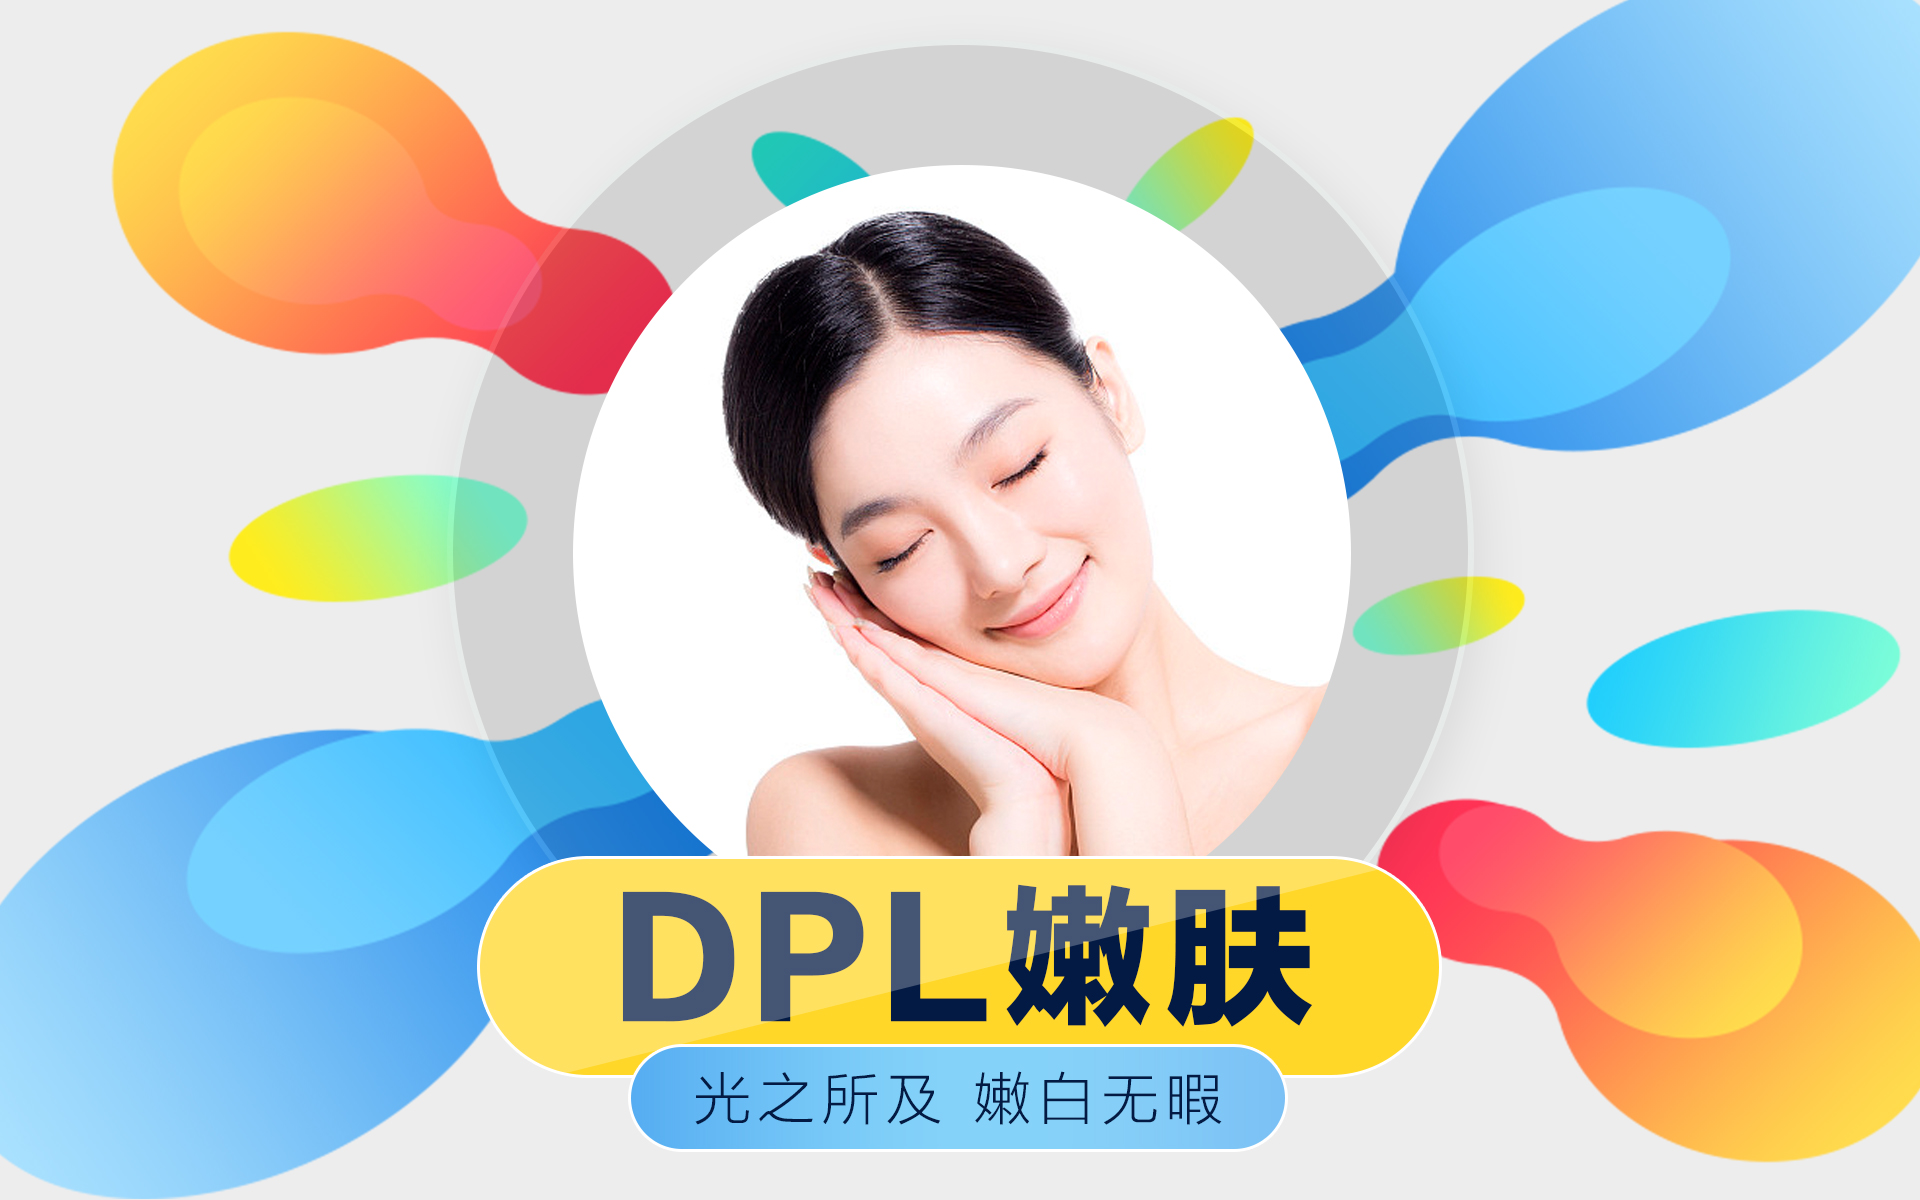 DPL(窄譜光嫩膚)